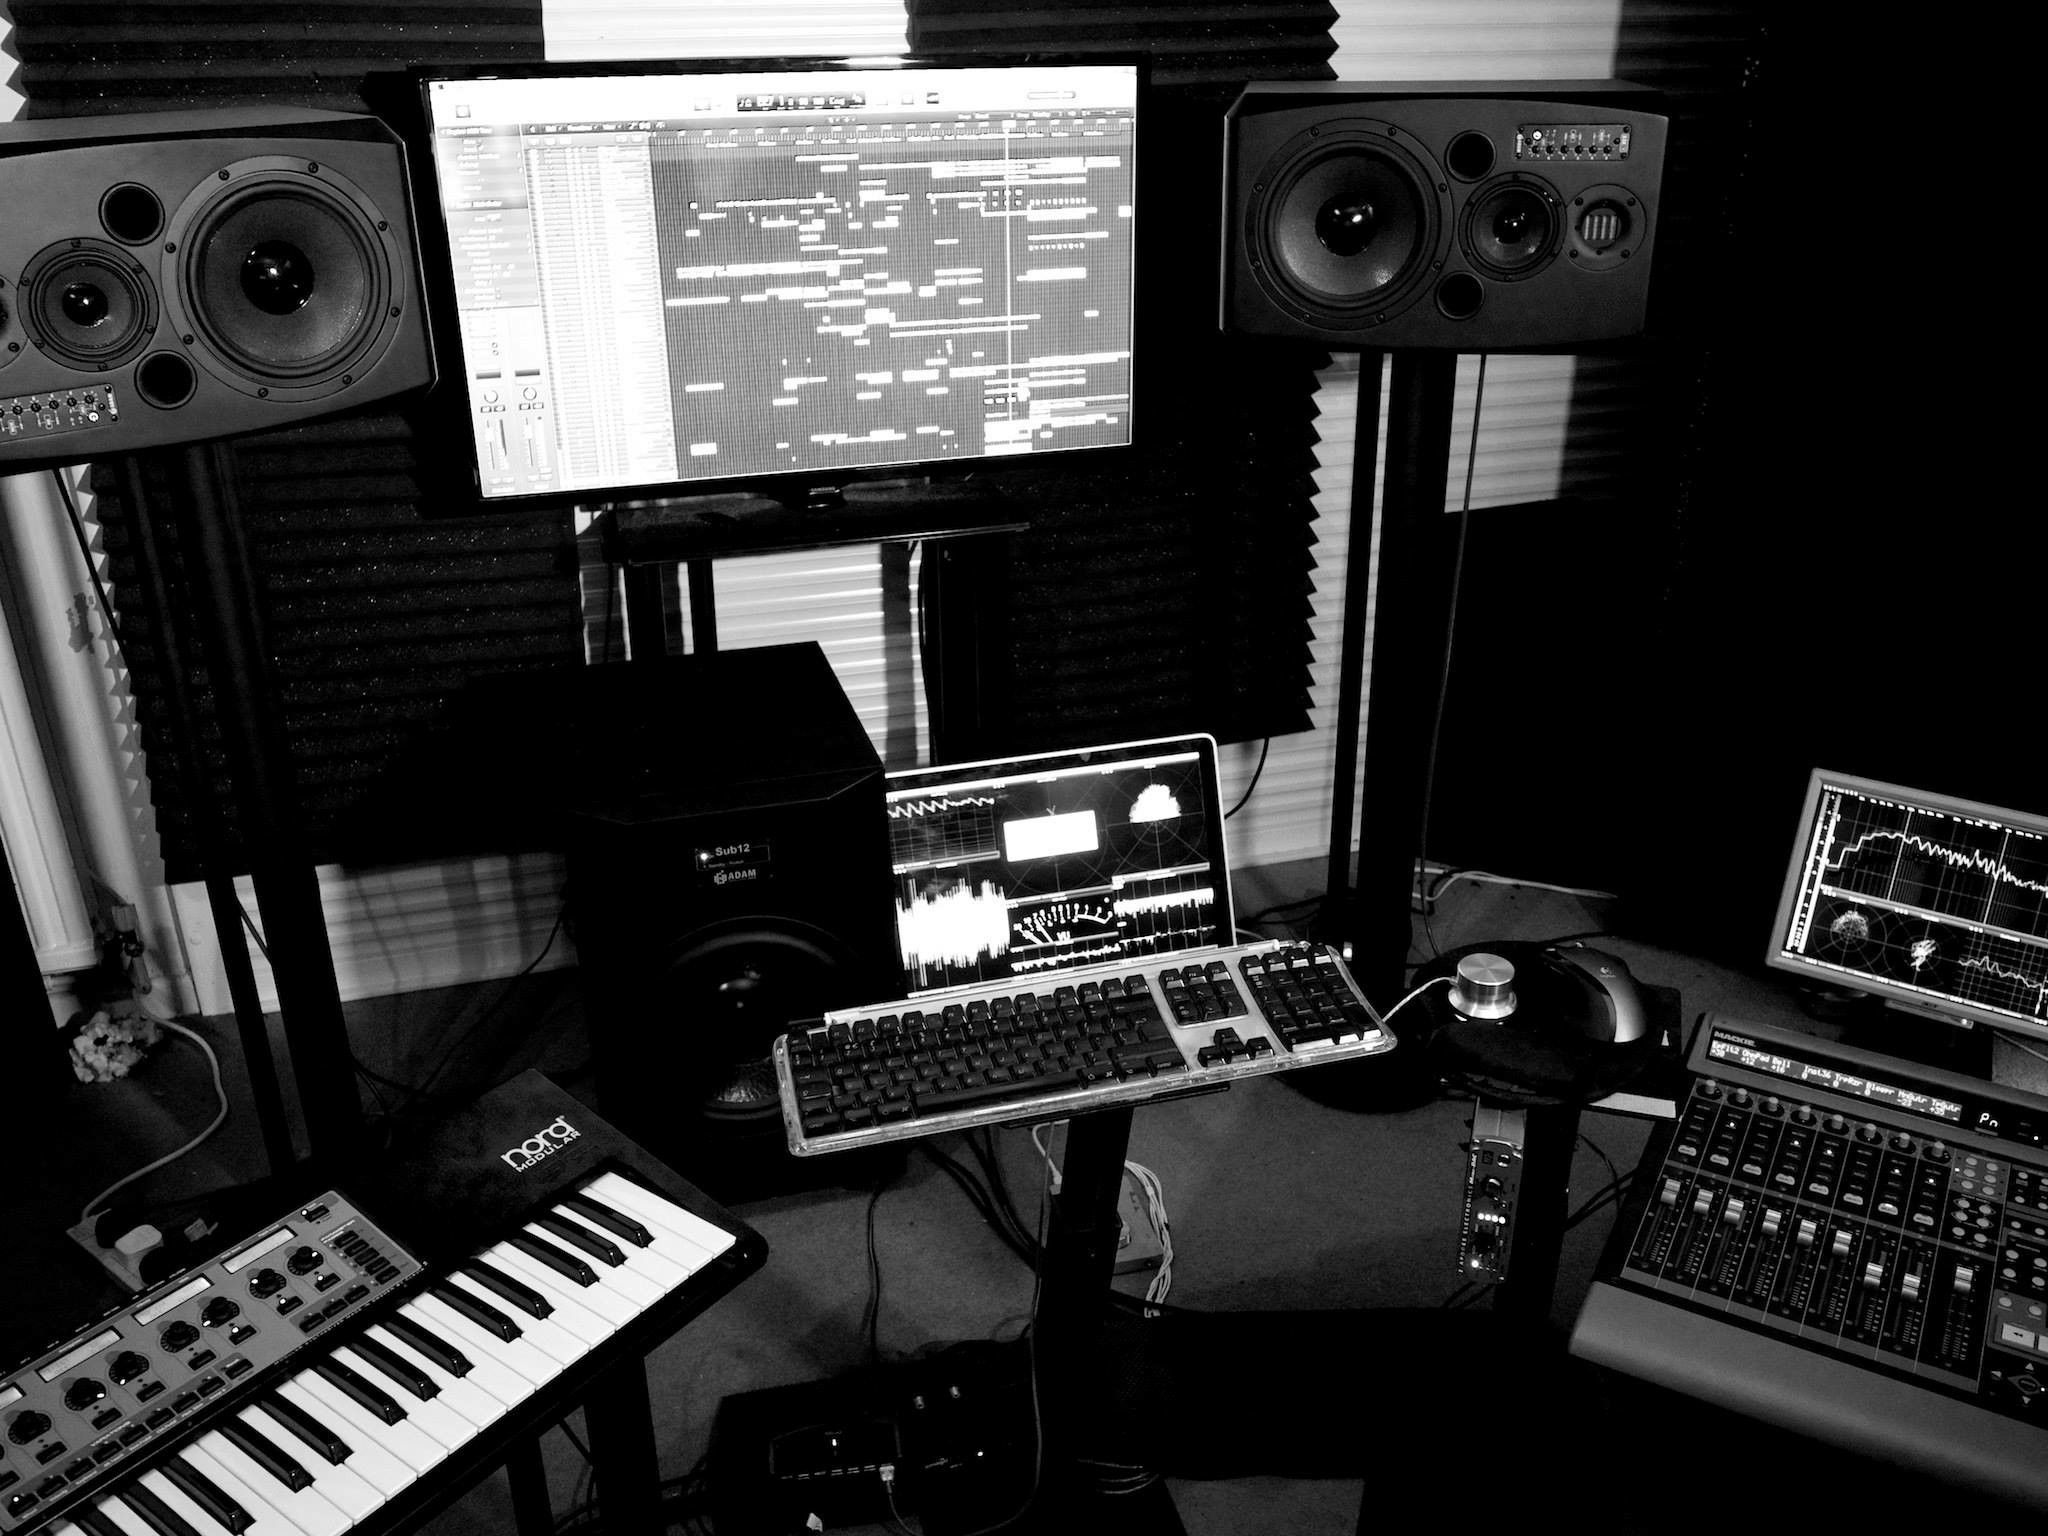 46+] Music Recording Studio HD Wallpaper - WallpaperSafari